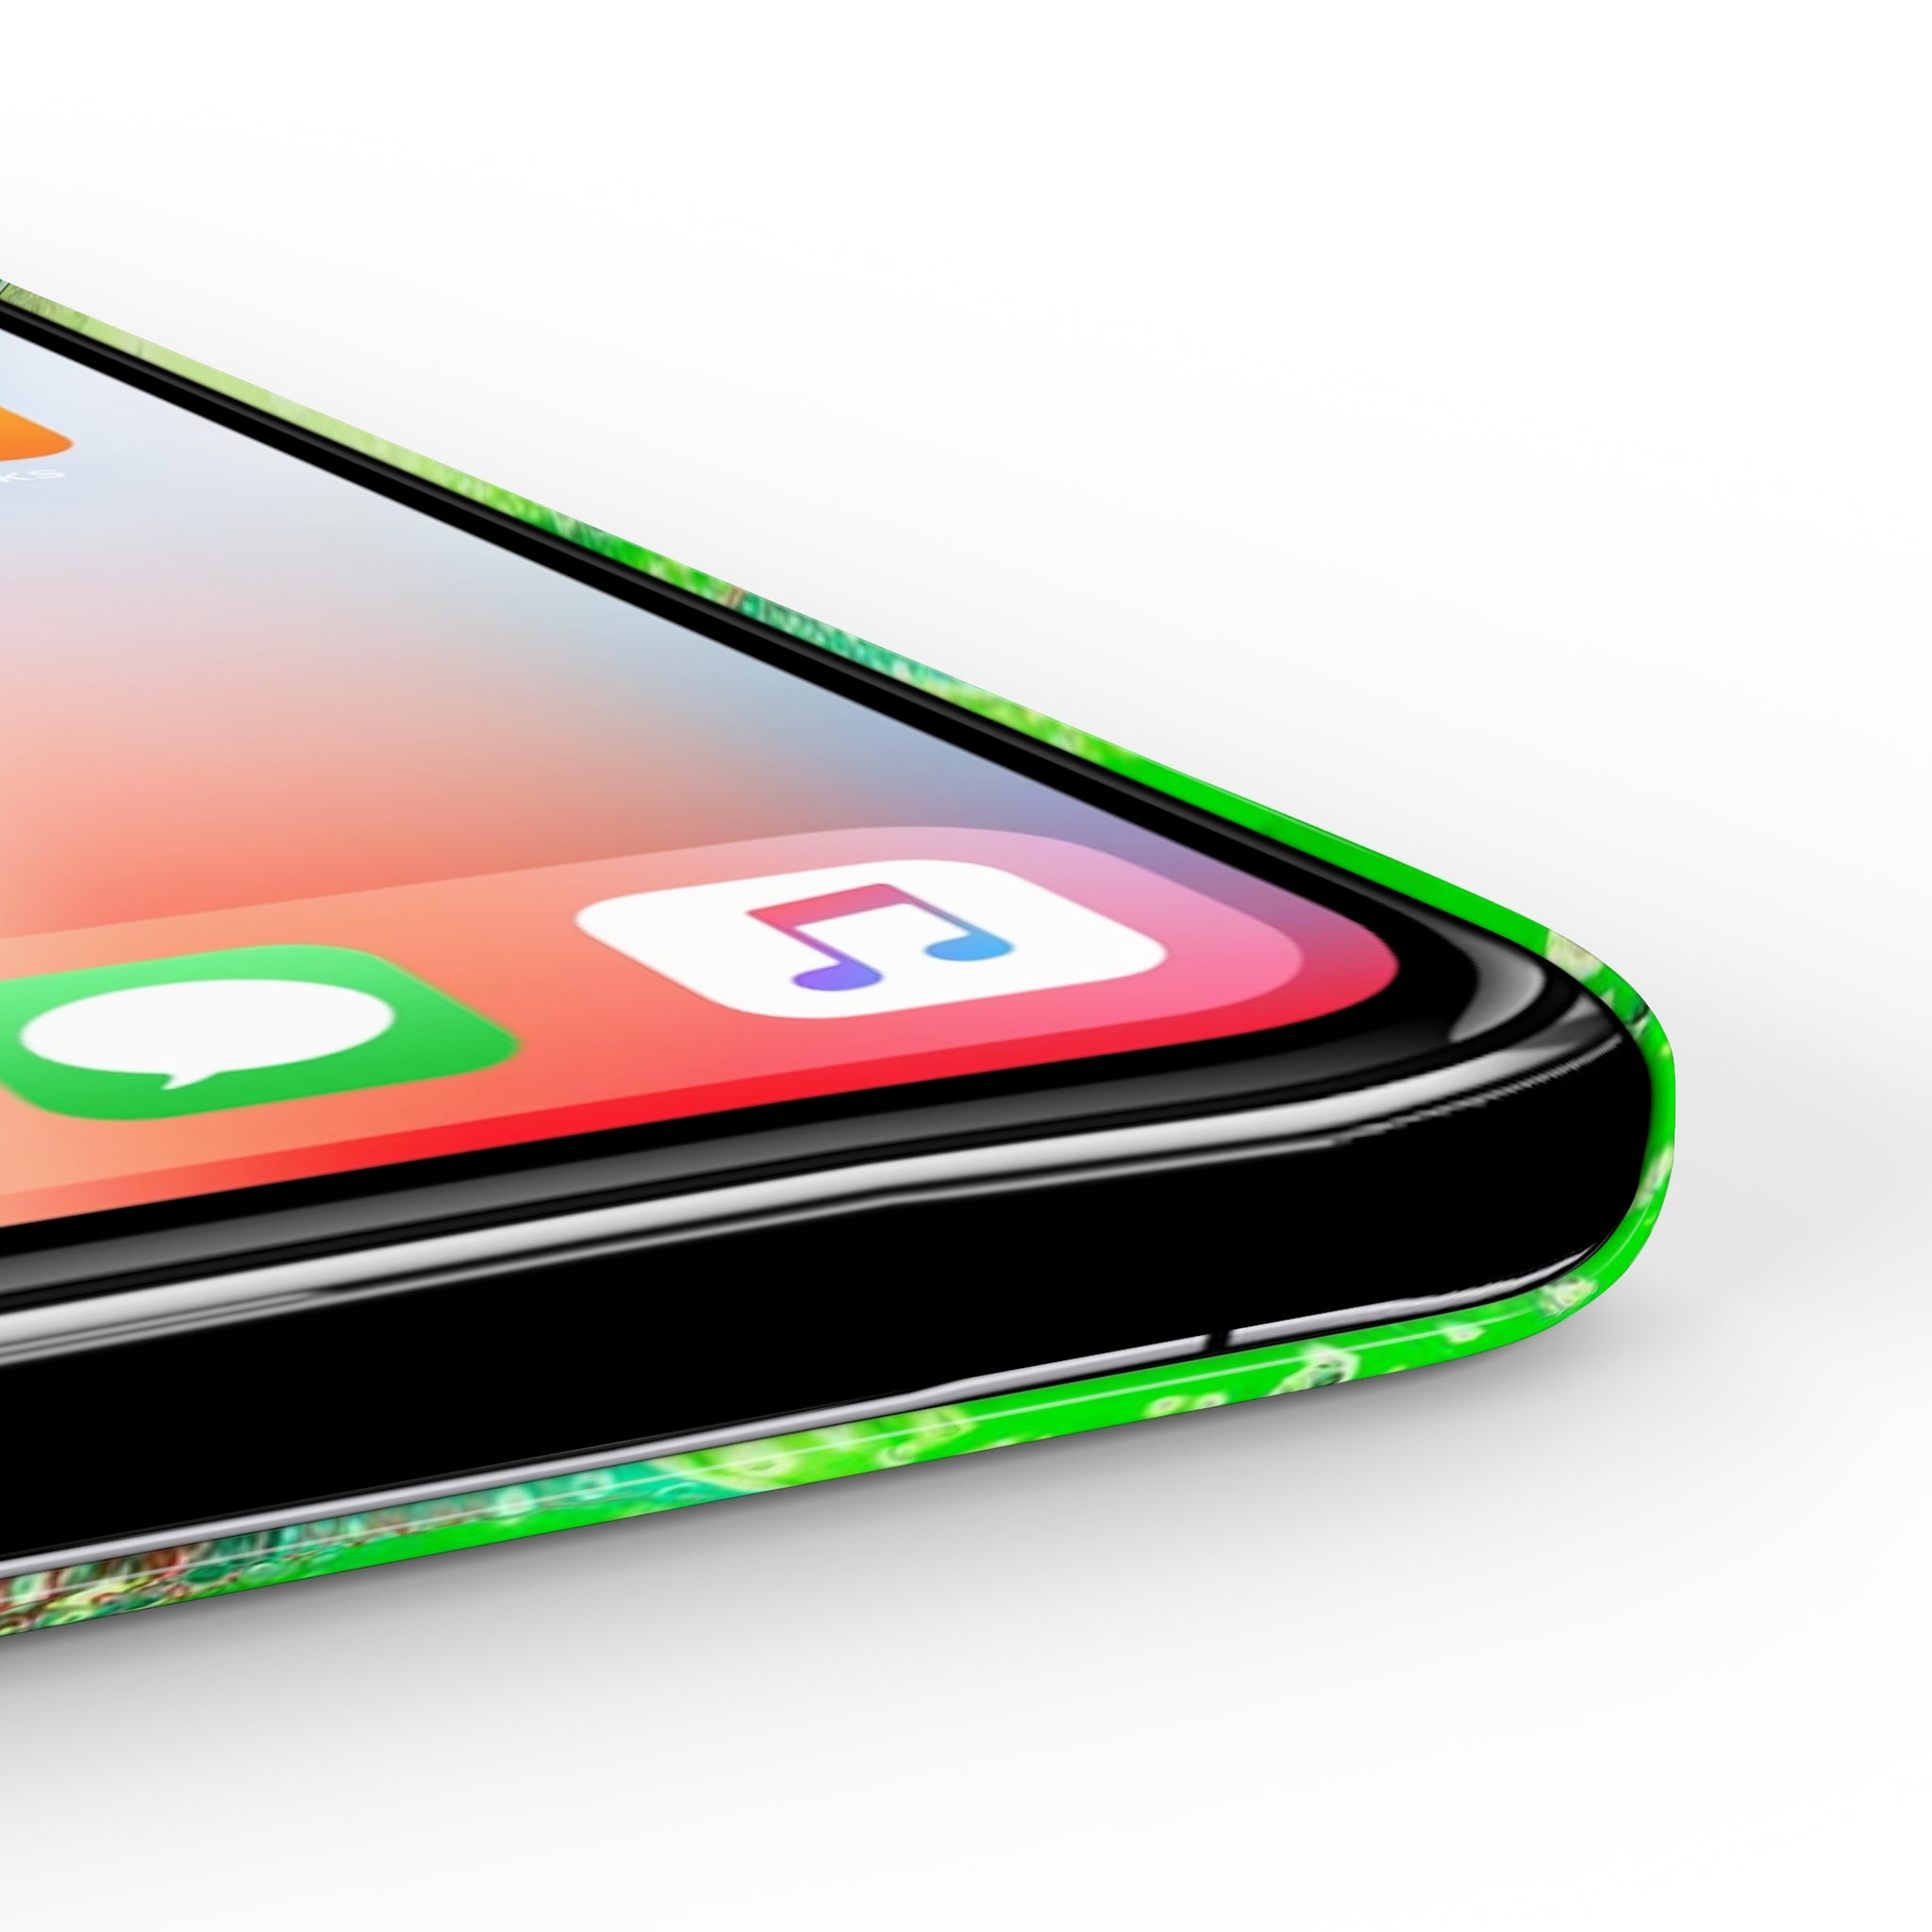 Seas Of Green - Slim Phone Cases